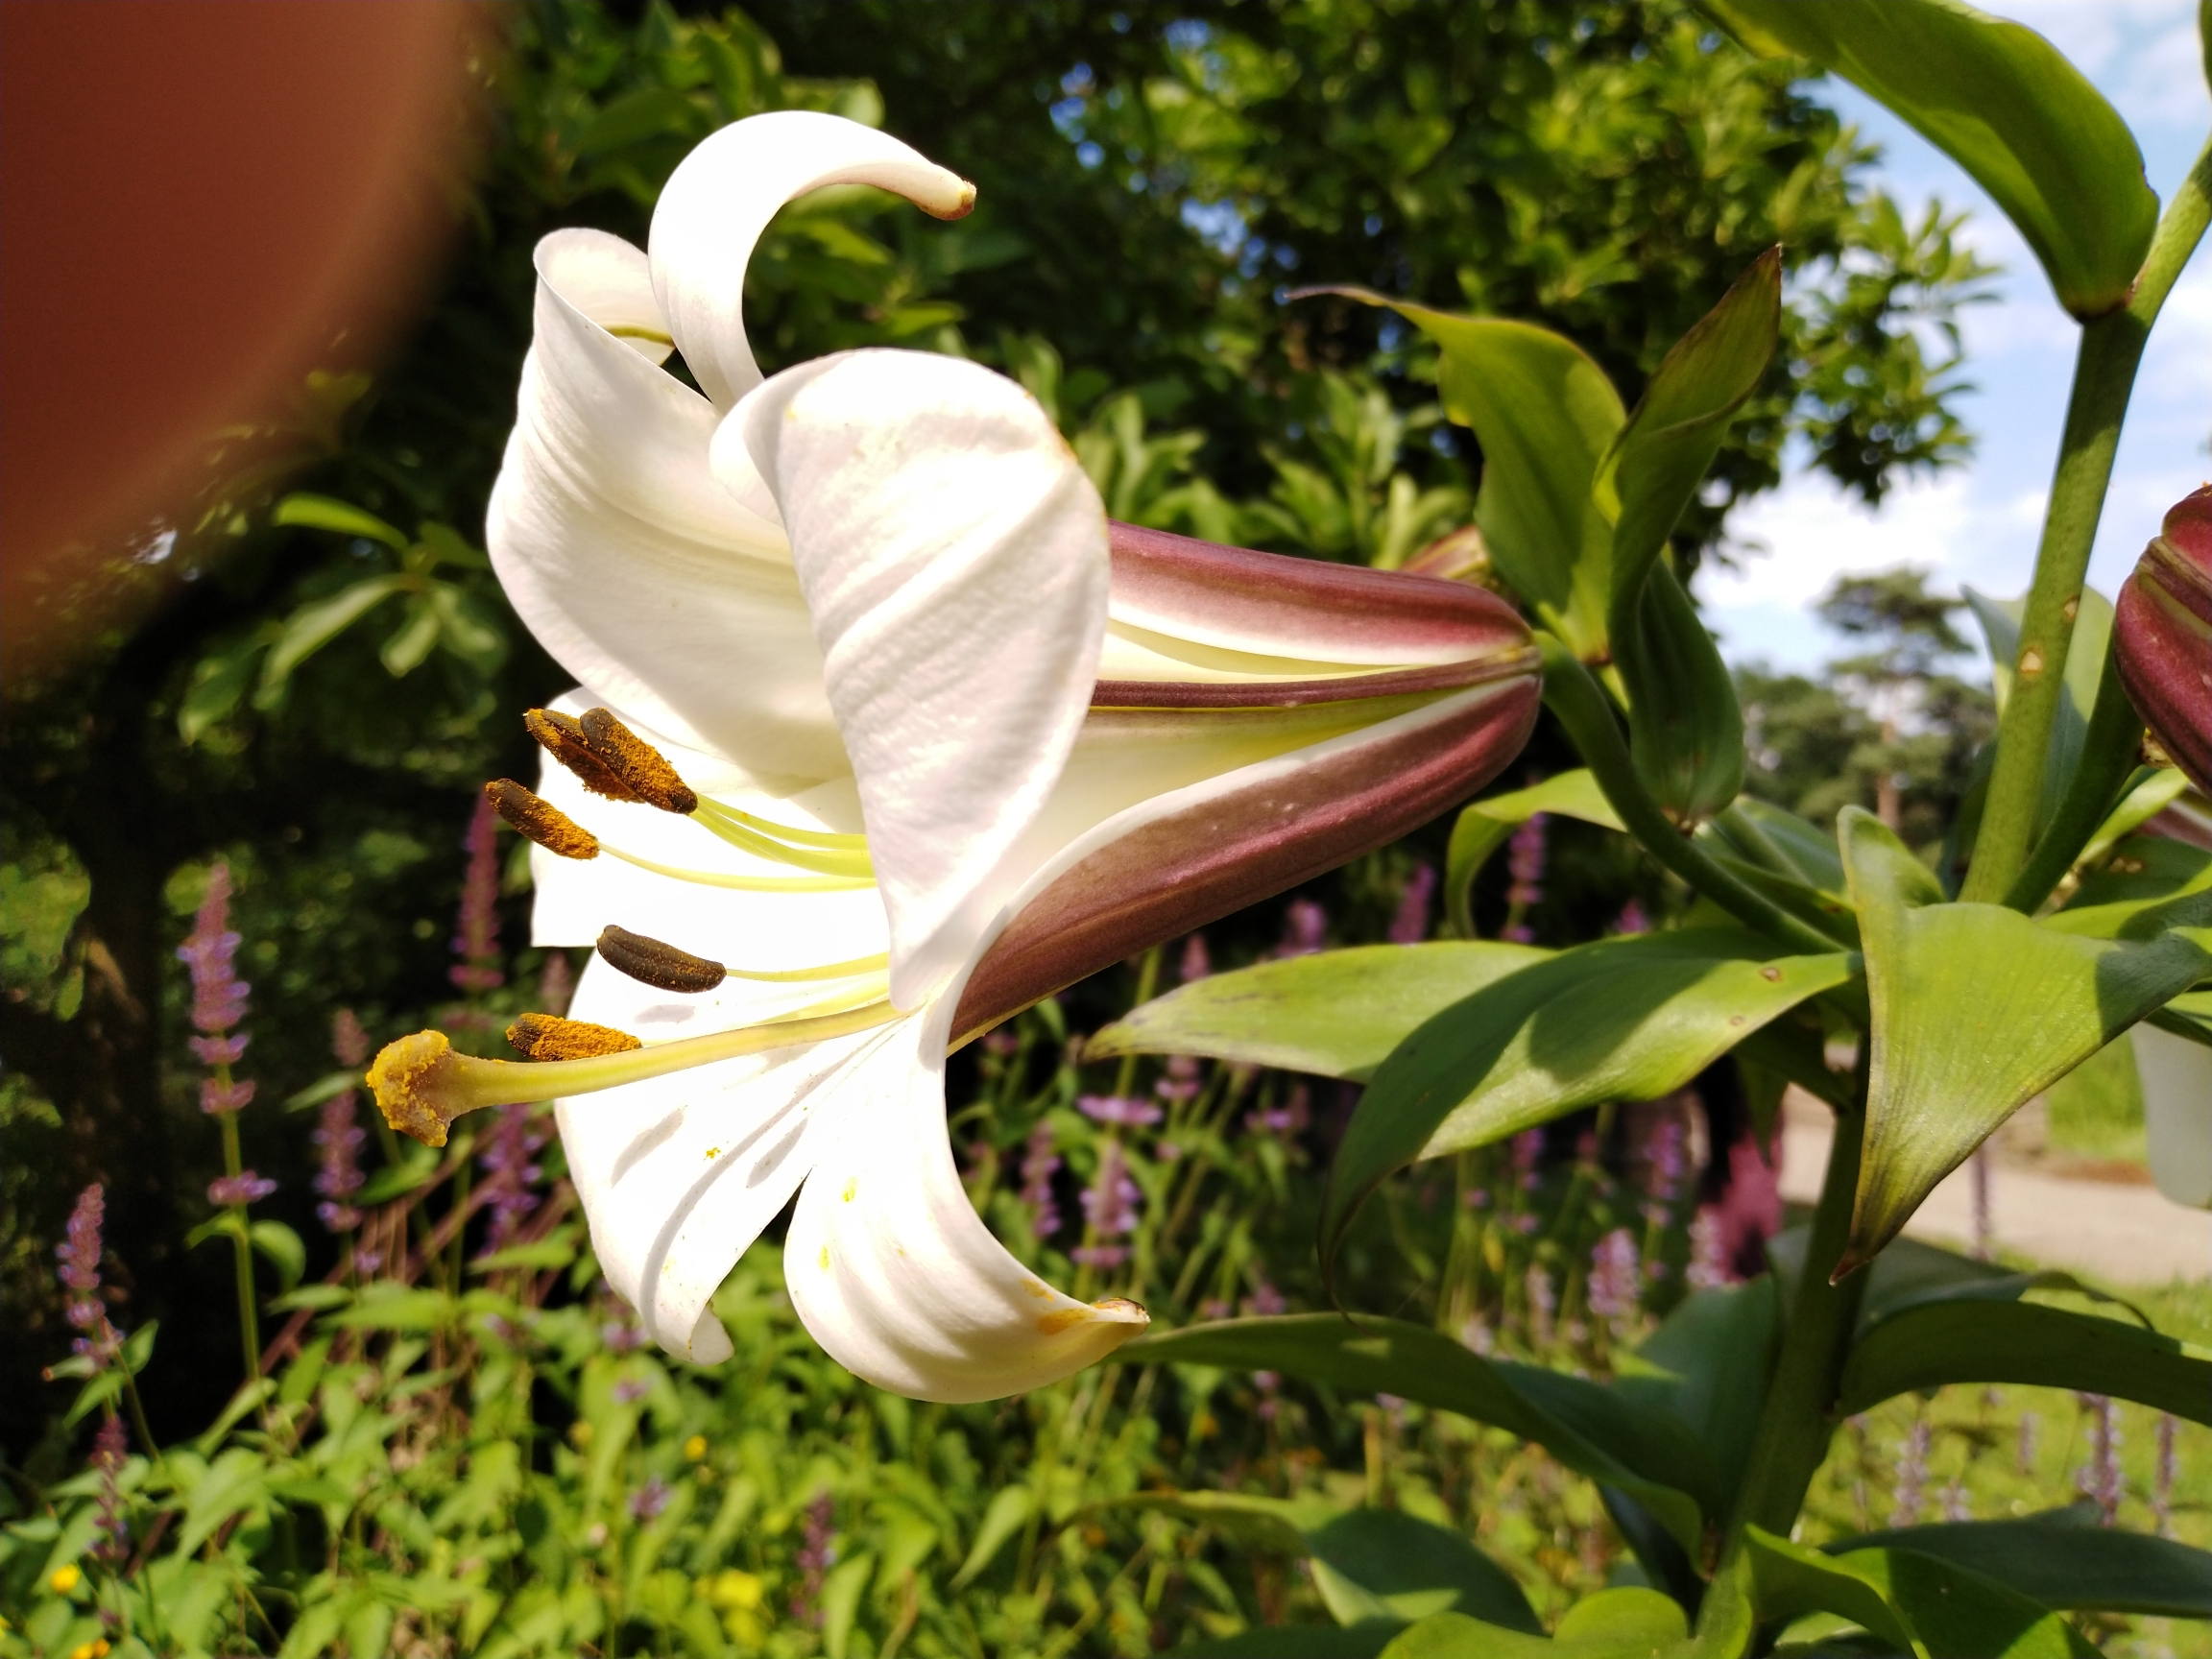 萱草花跟前面的介绍过的第四种有些相近,它也是由绸缎般的白色花瓣为